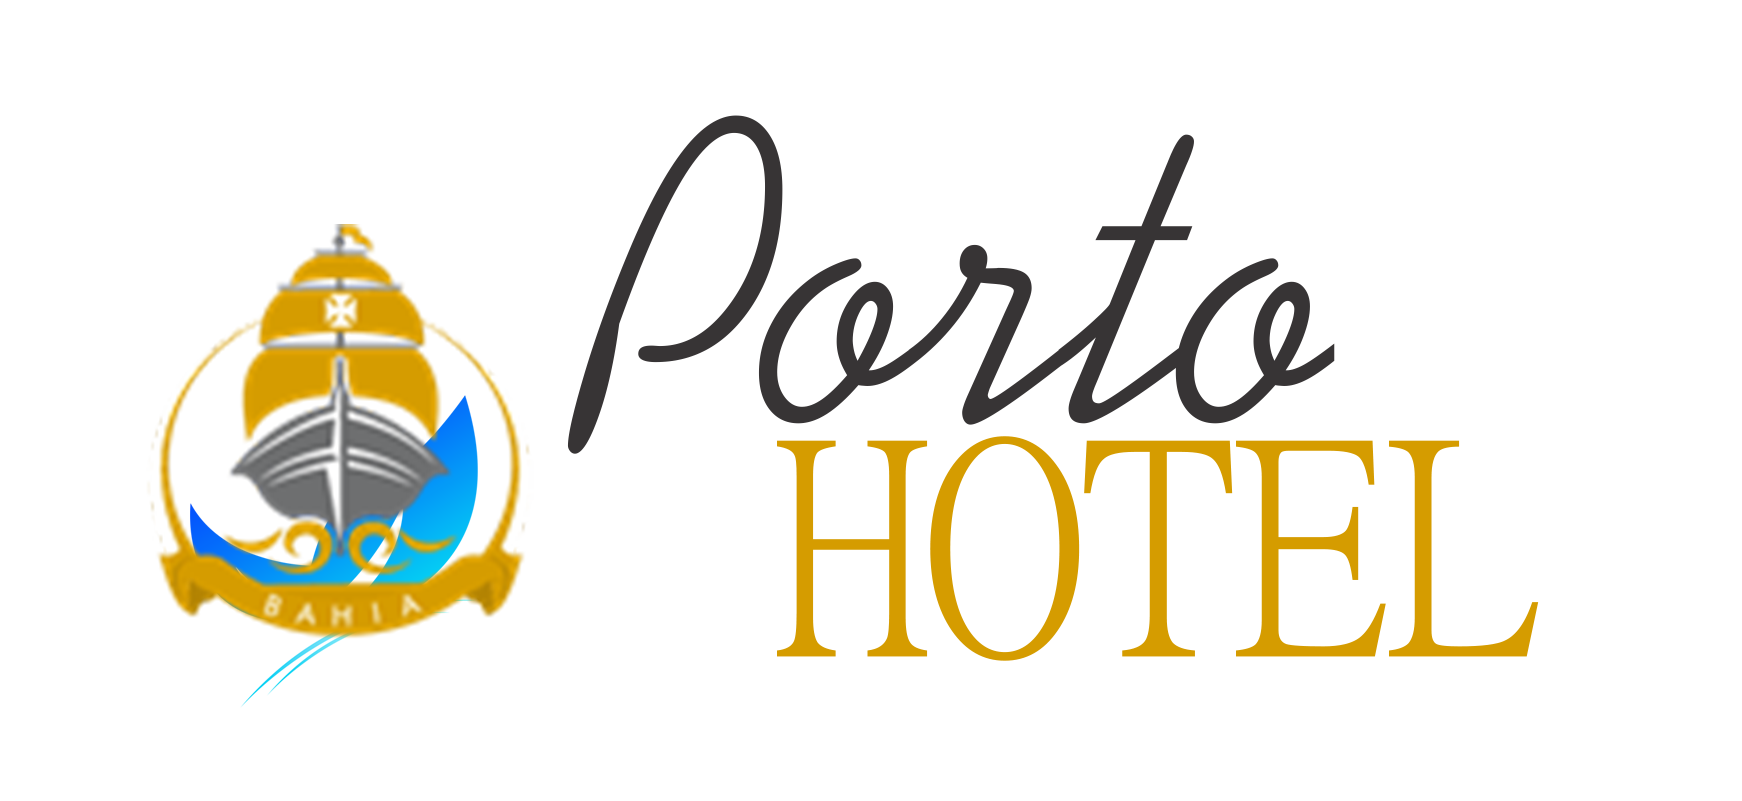 Porto Hotel – Melhor Hotel de Porto